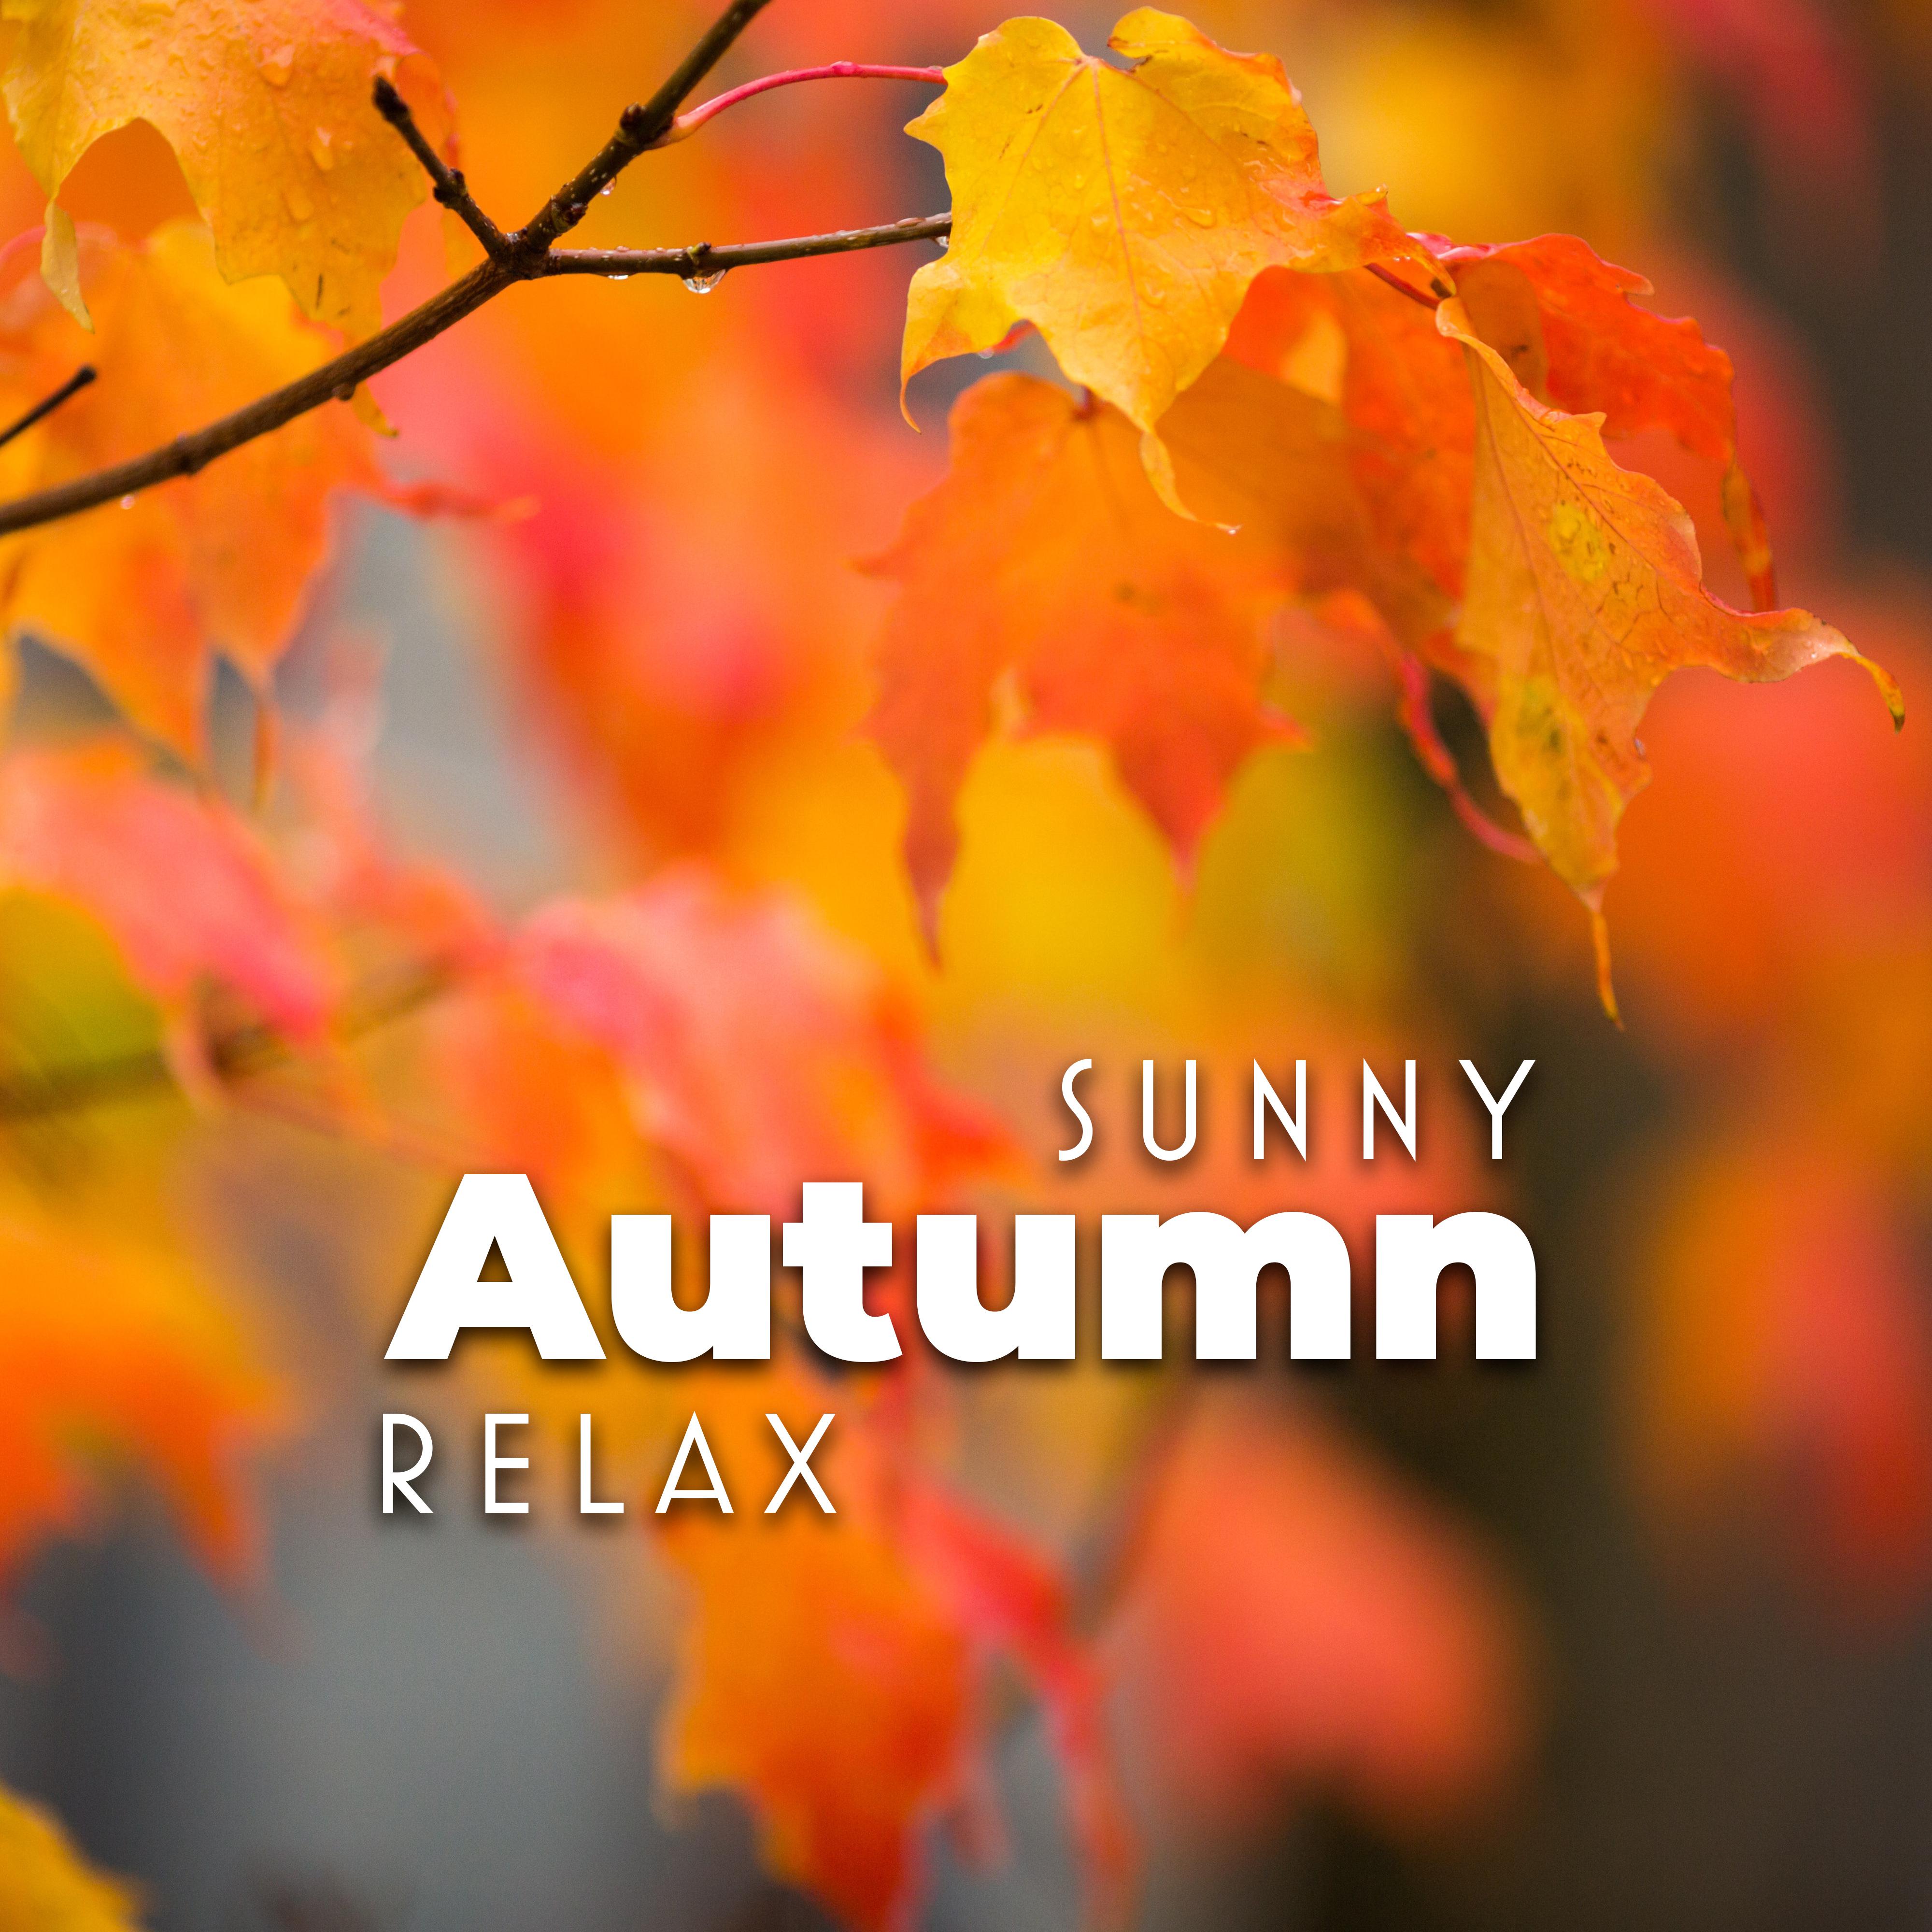 Sunny Autumn Relax